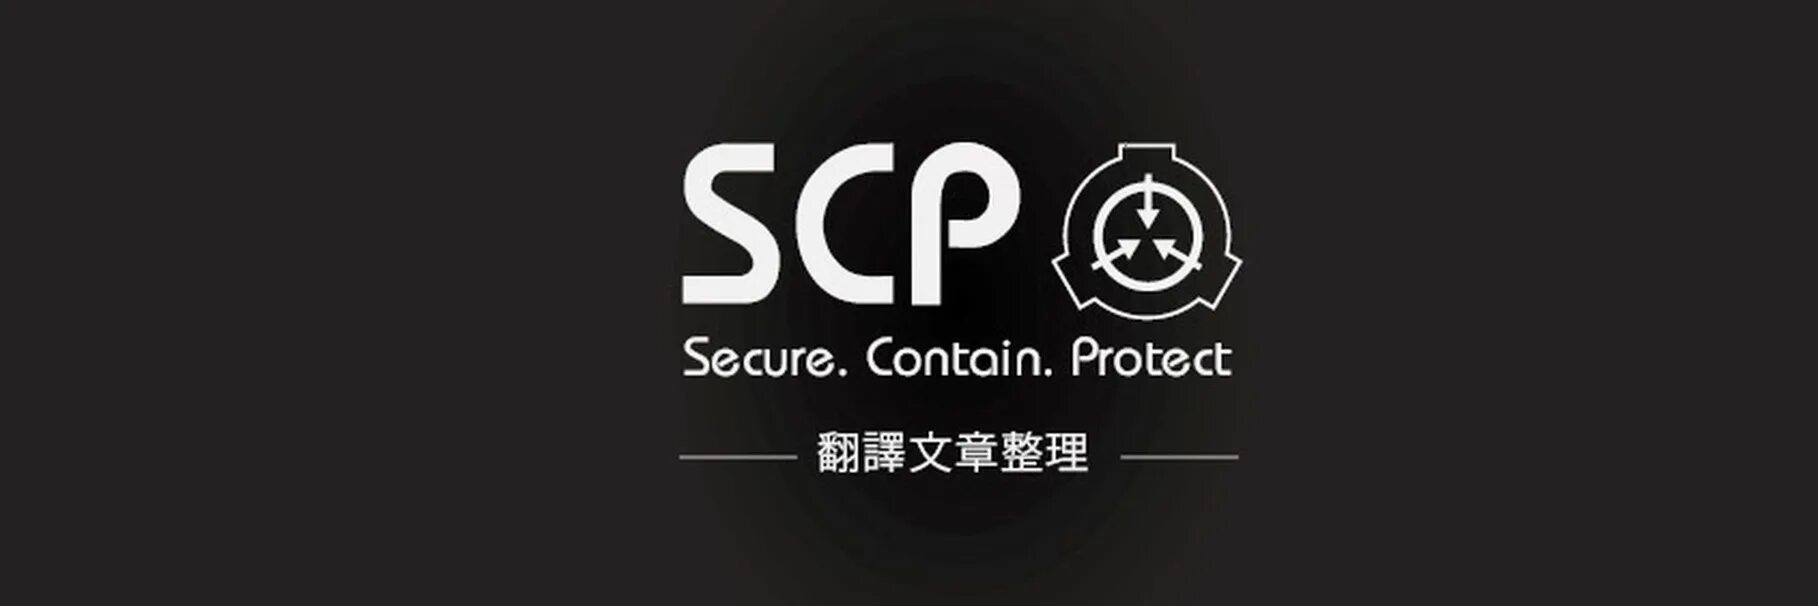 Песня scp фонда. SCP фонд. SCP эмблема. Логотип фонда SCP. Картинки SCP фонда.